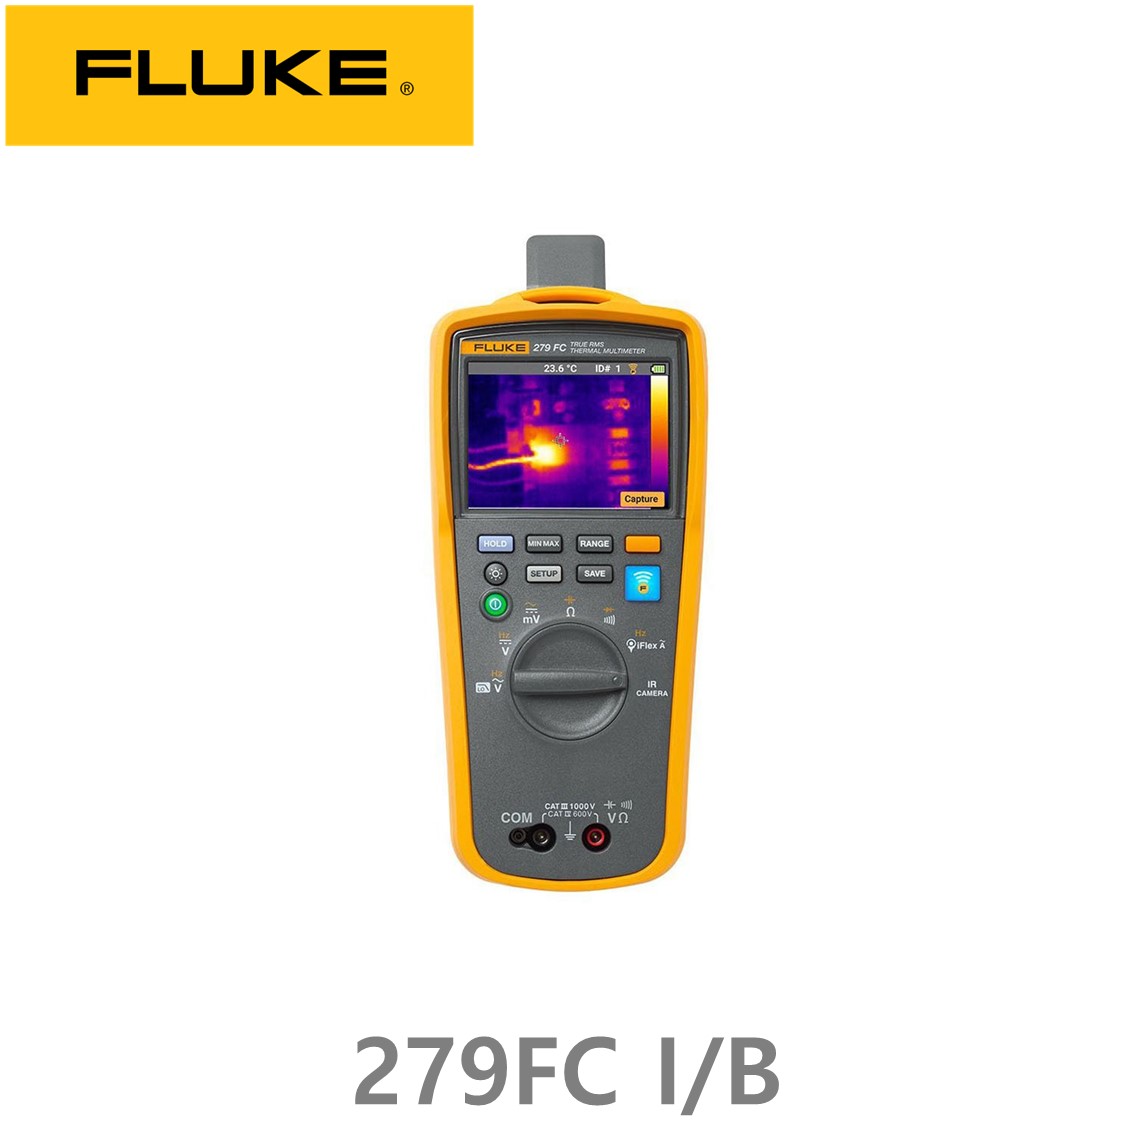 [ Fluke 279 FC I/B ] 정품 플루크 열화상카메라 멀티미터,플루크 279FC (추가배터리)